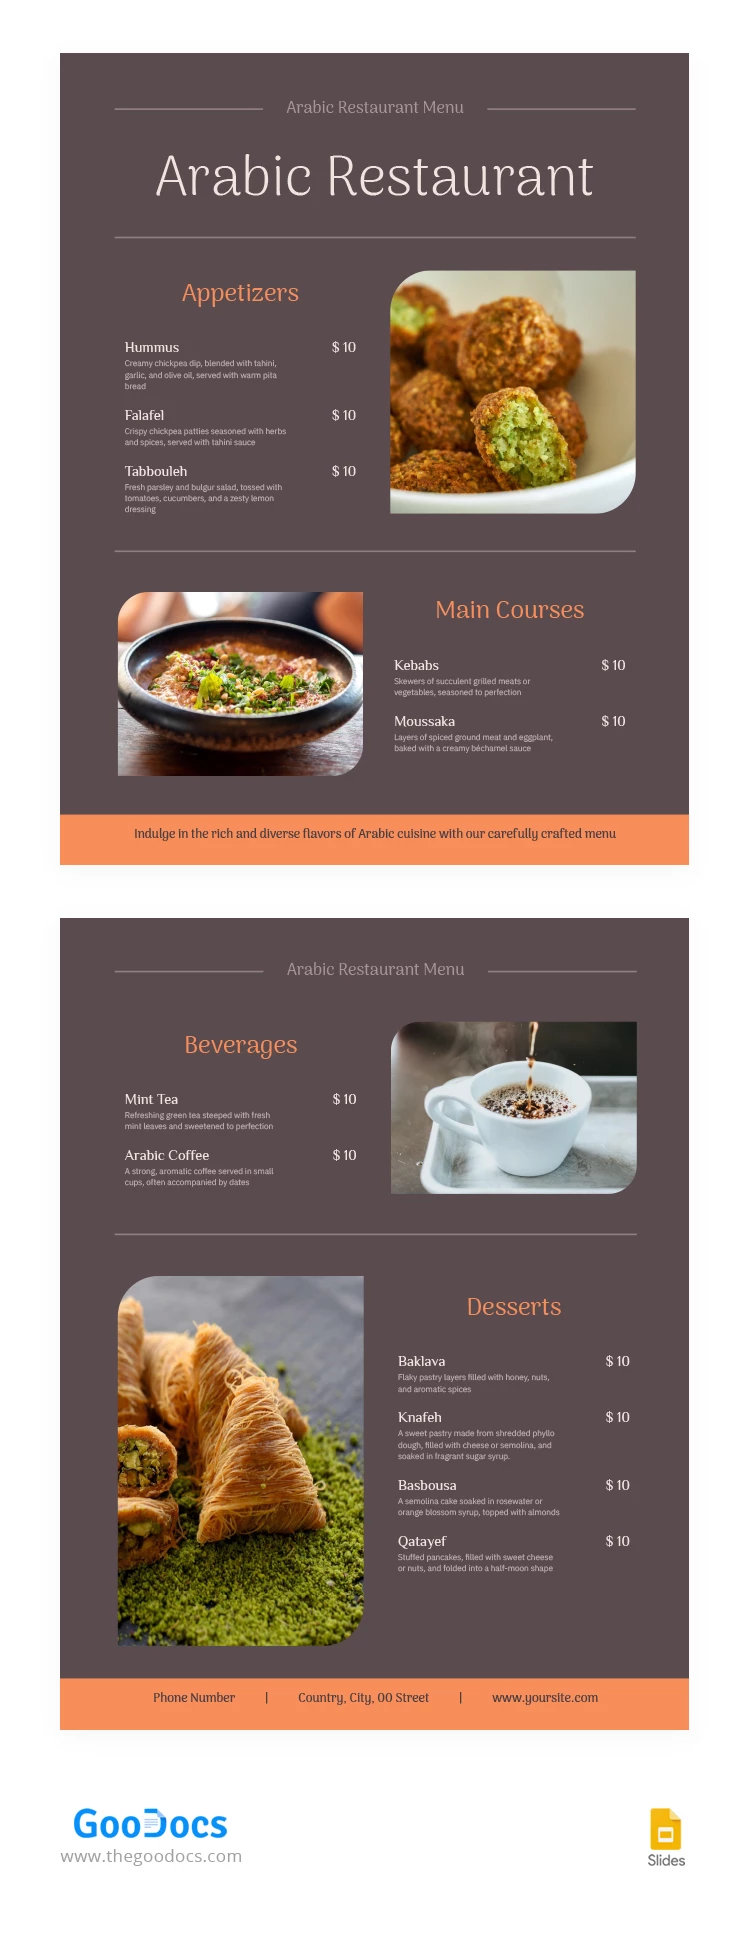 Menú de restaurante árabe - free Google Docs Template - 10067228